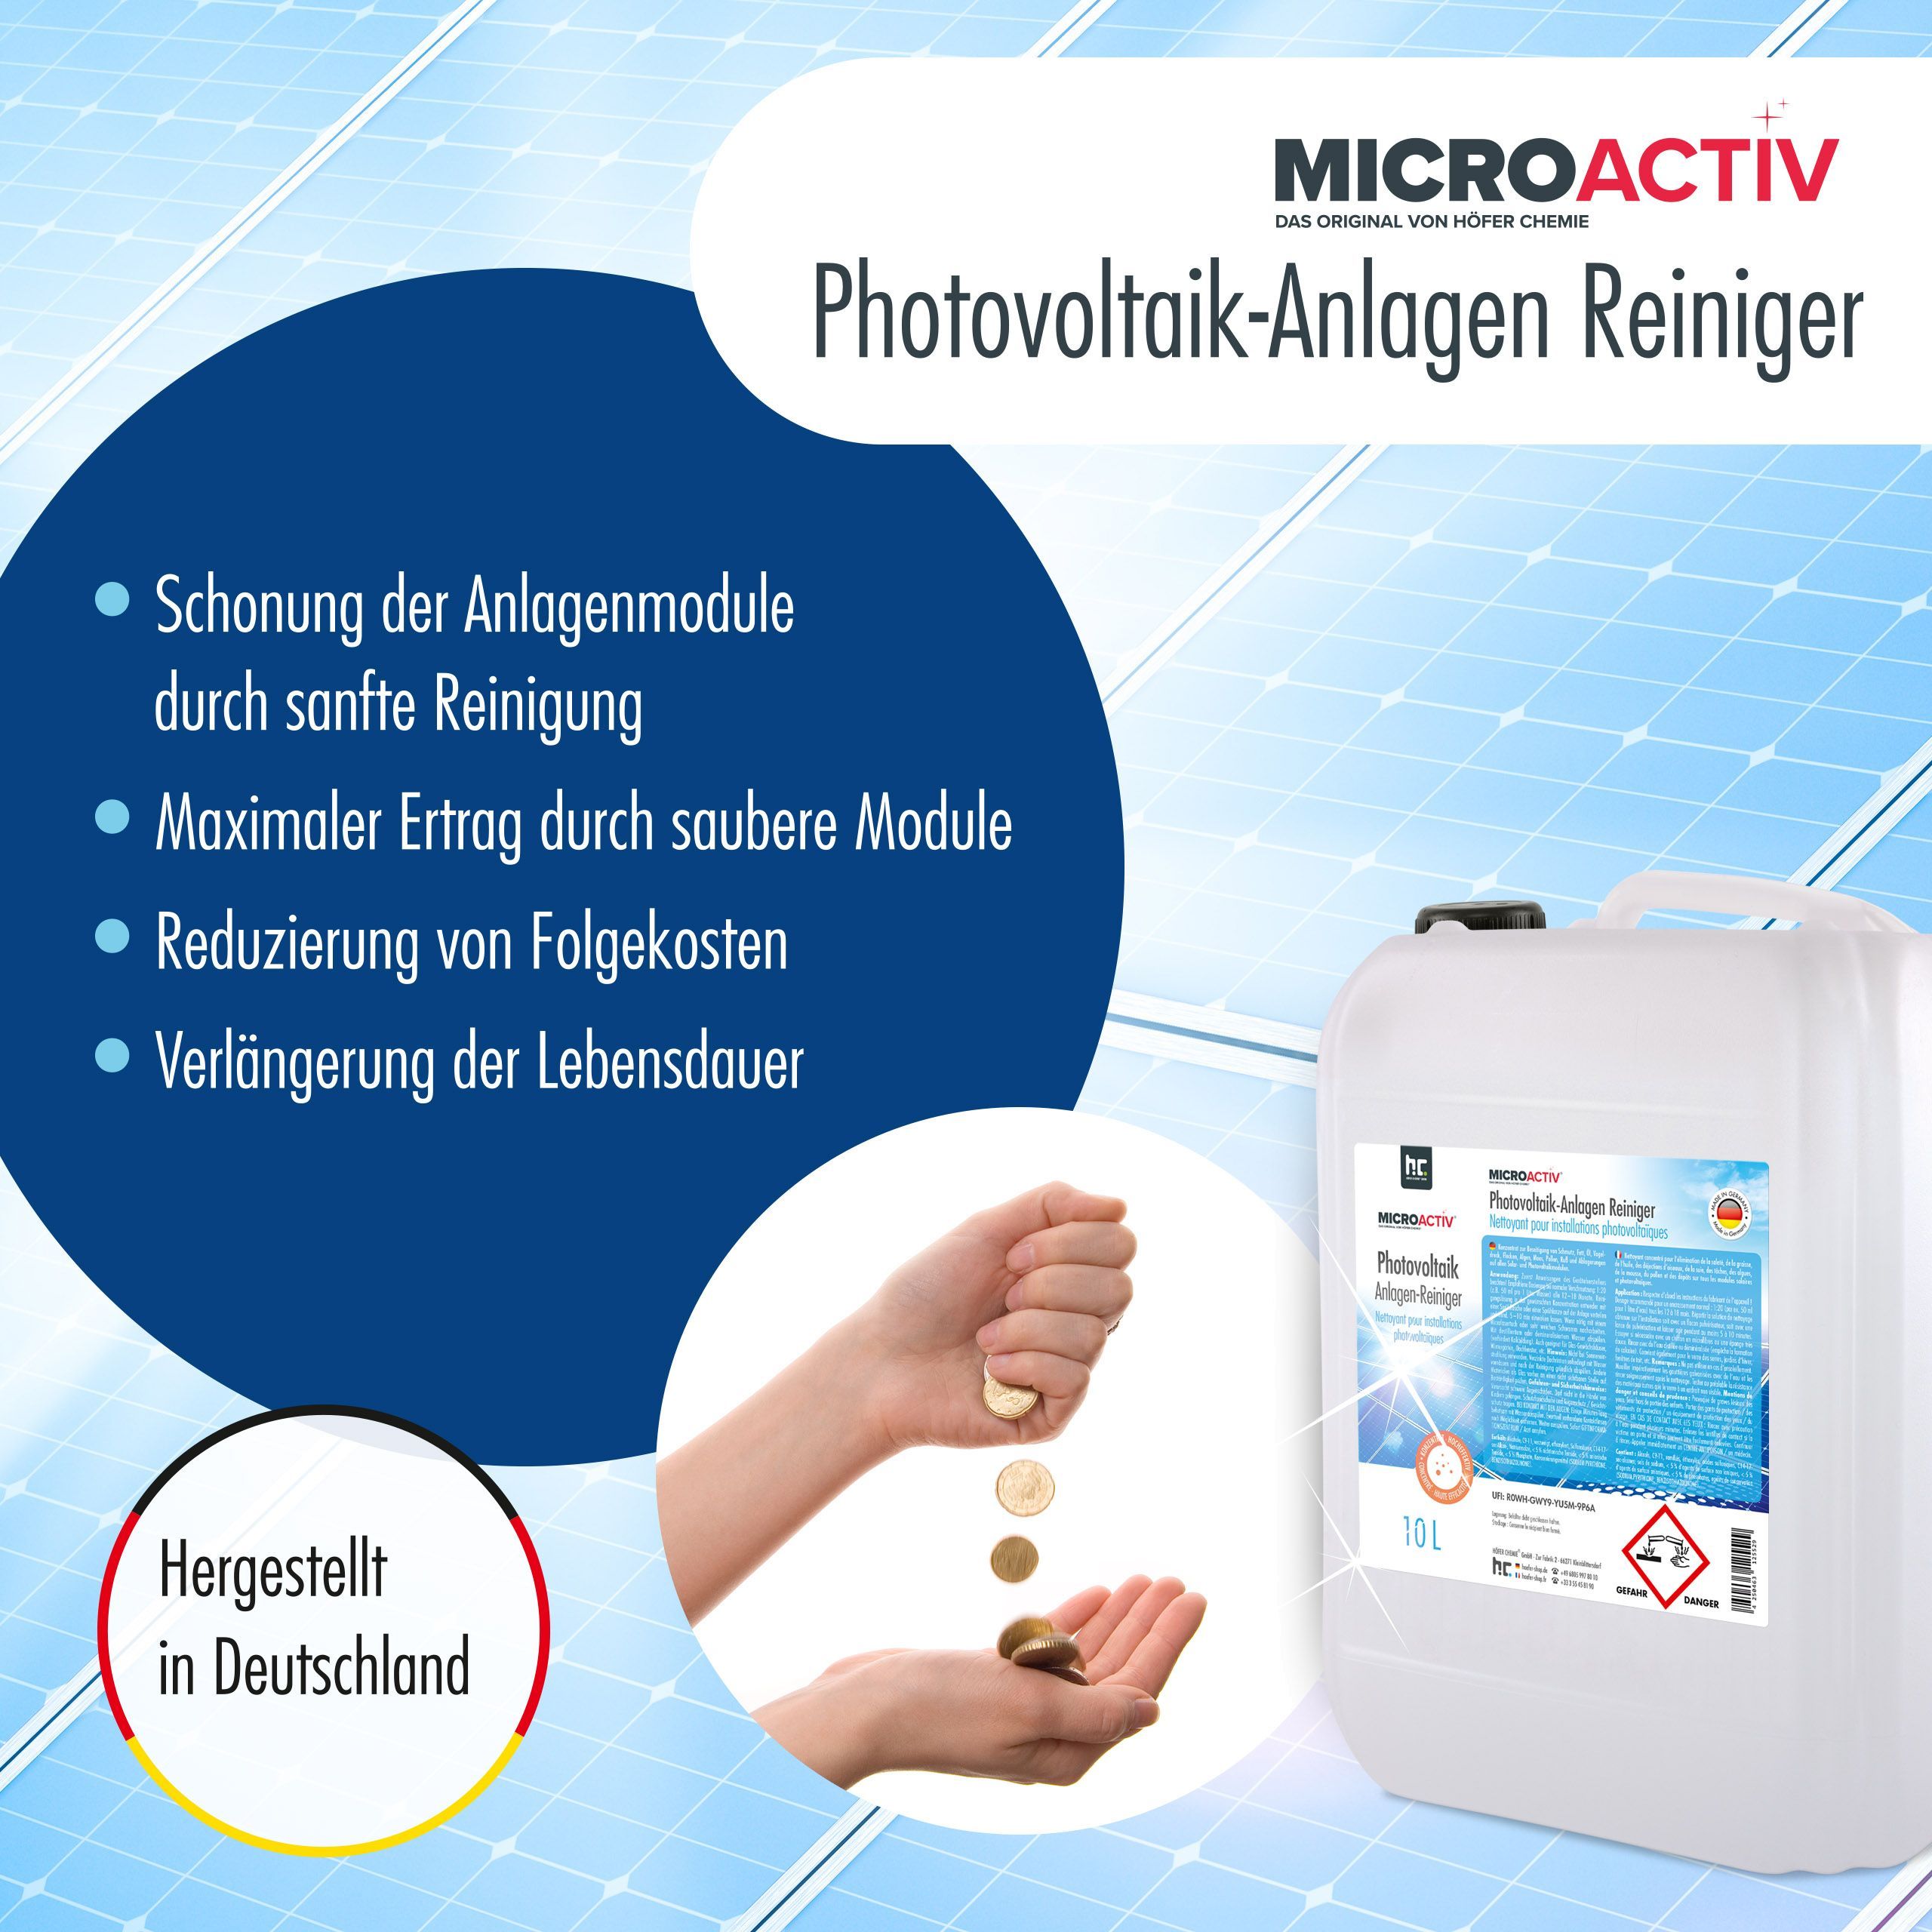 10 L Microactiv® Nettoyant pour Installations Photovoltaïques